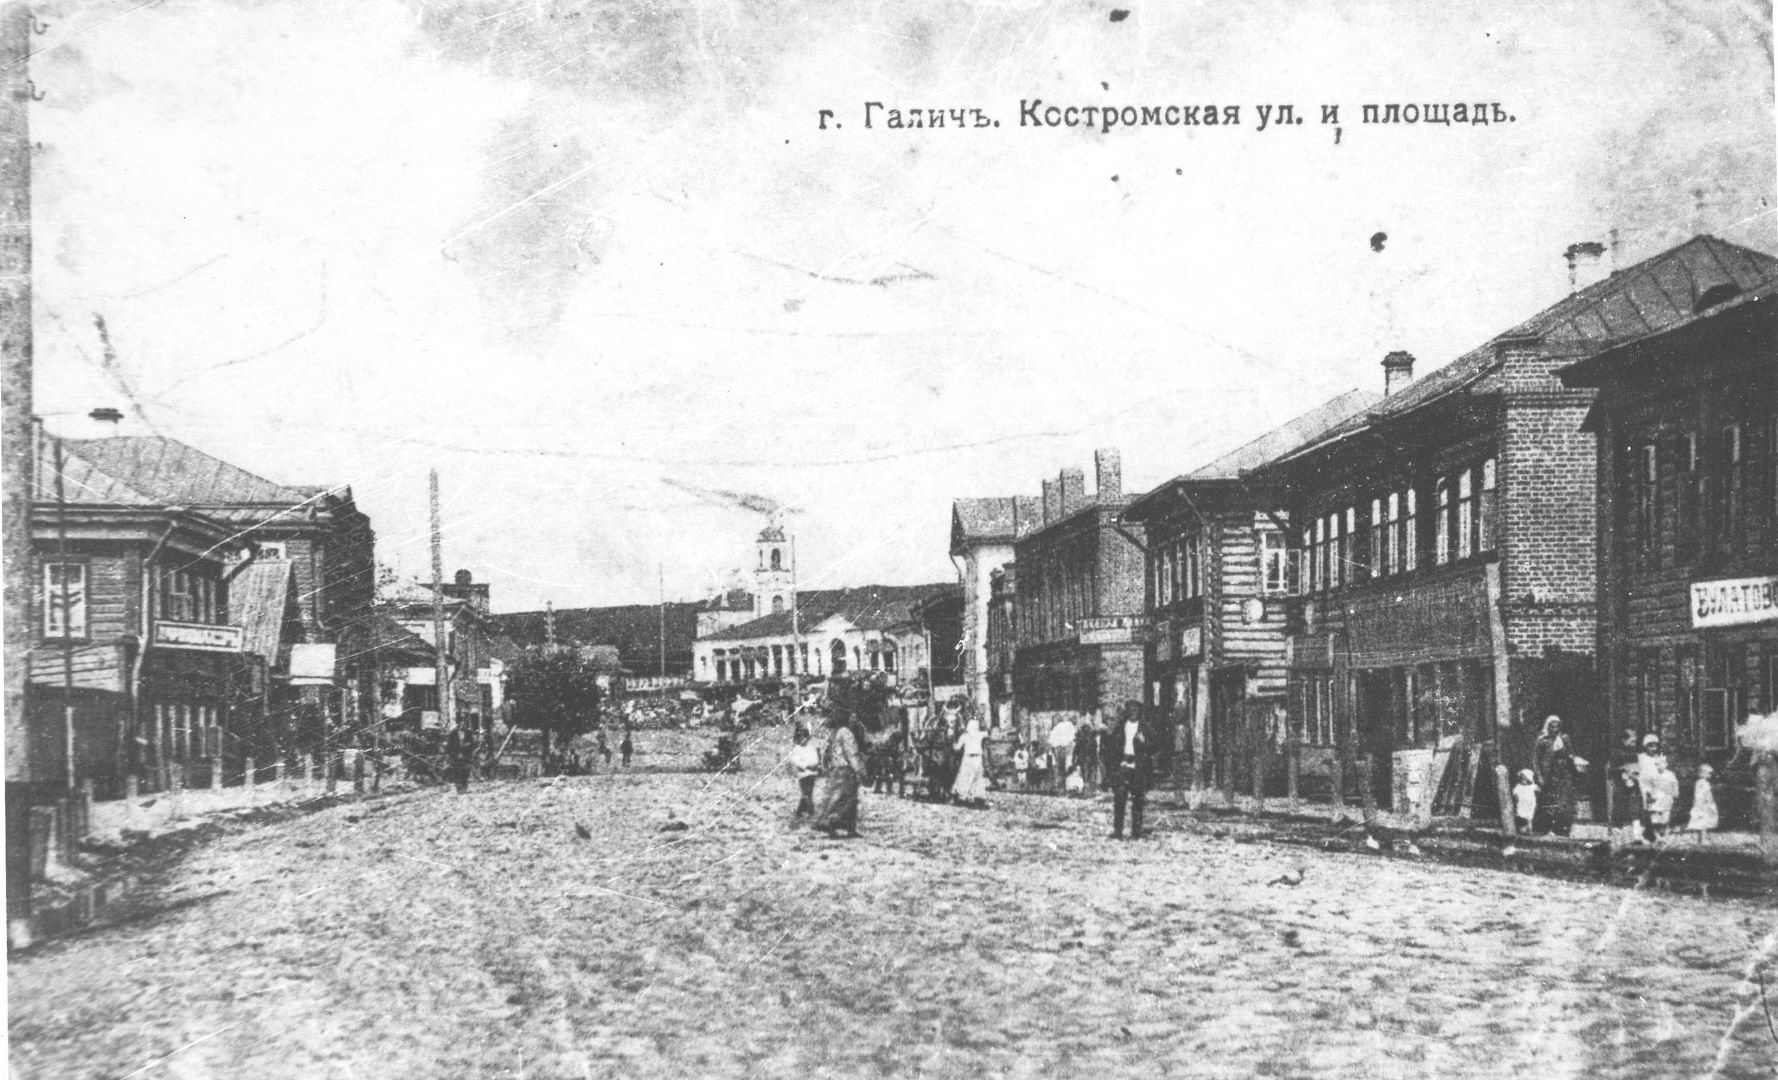 Галич. Костромская улица